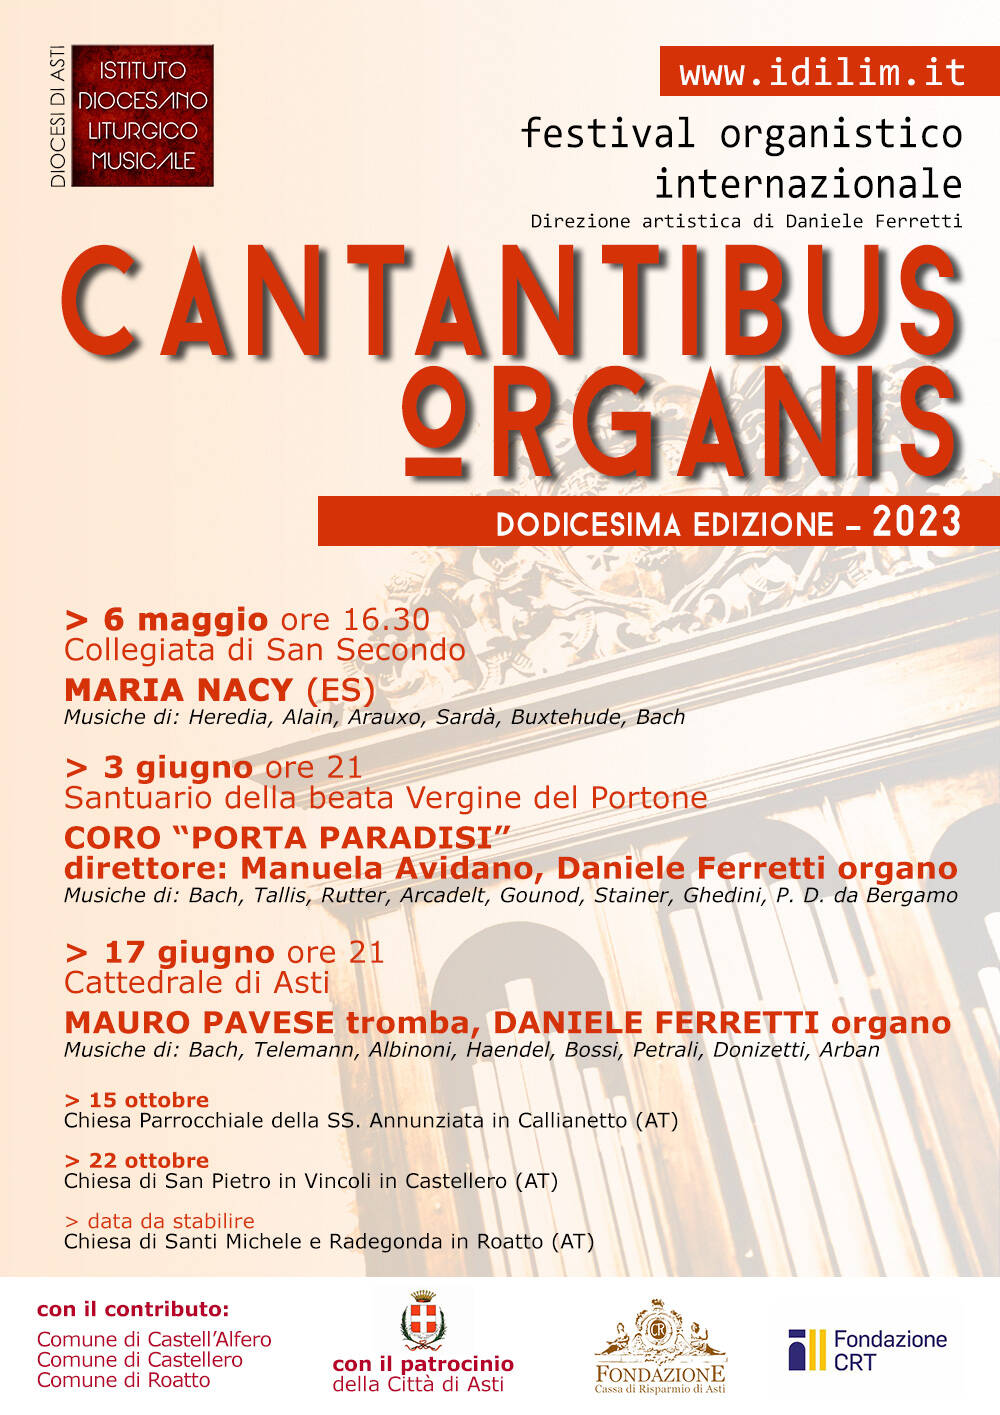 festival organistico “Cantantibus Organis” 2023